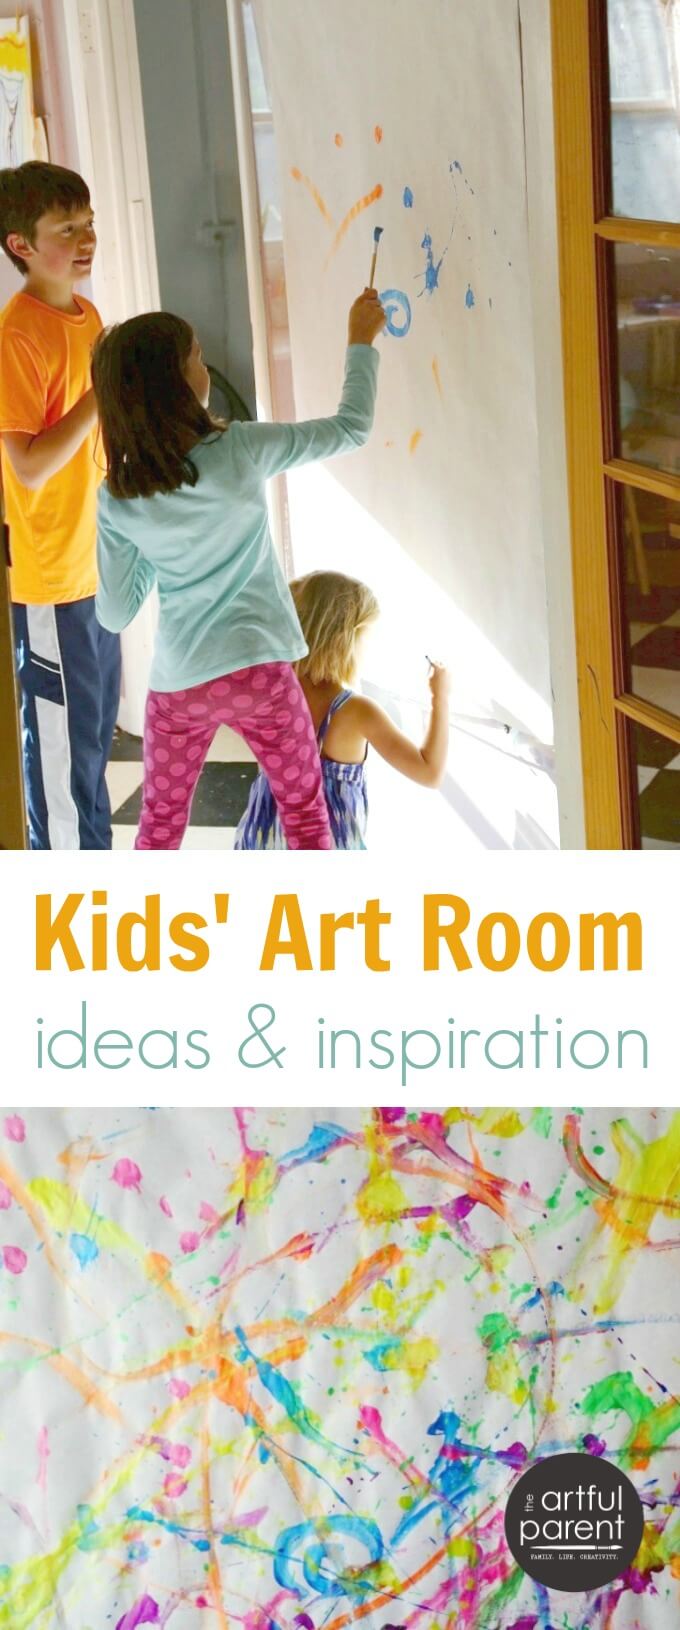 Kids Art Room Ideas